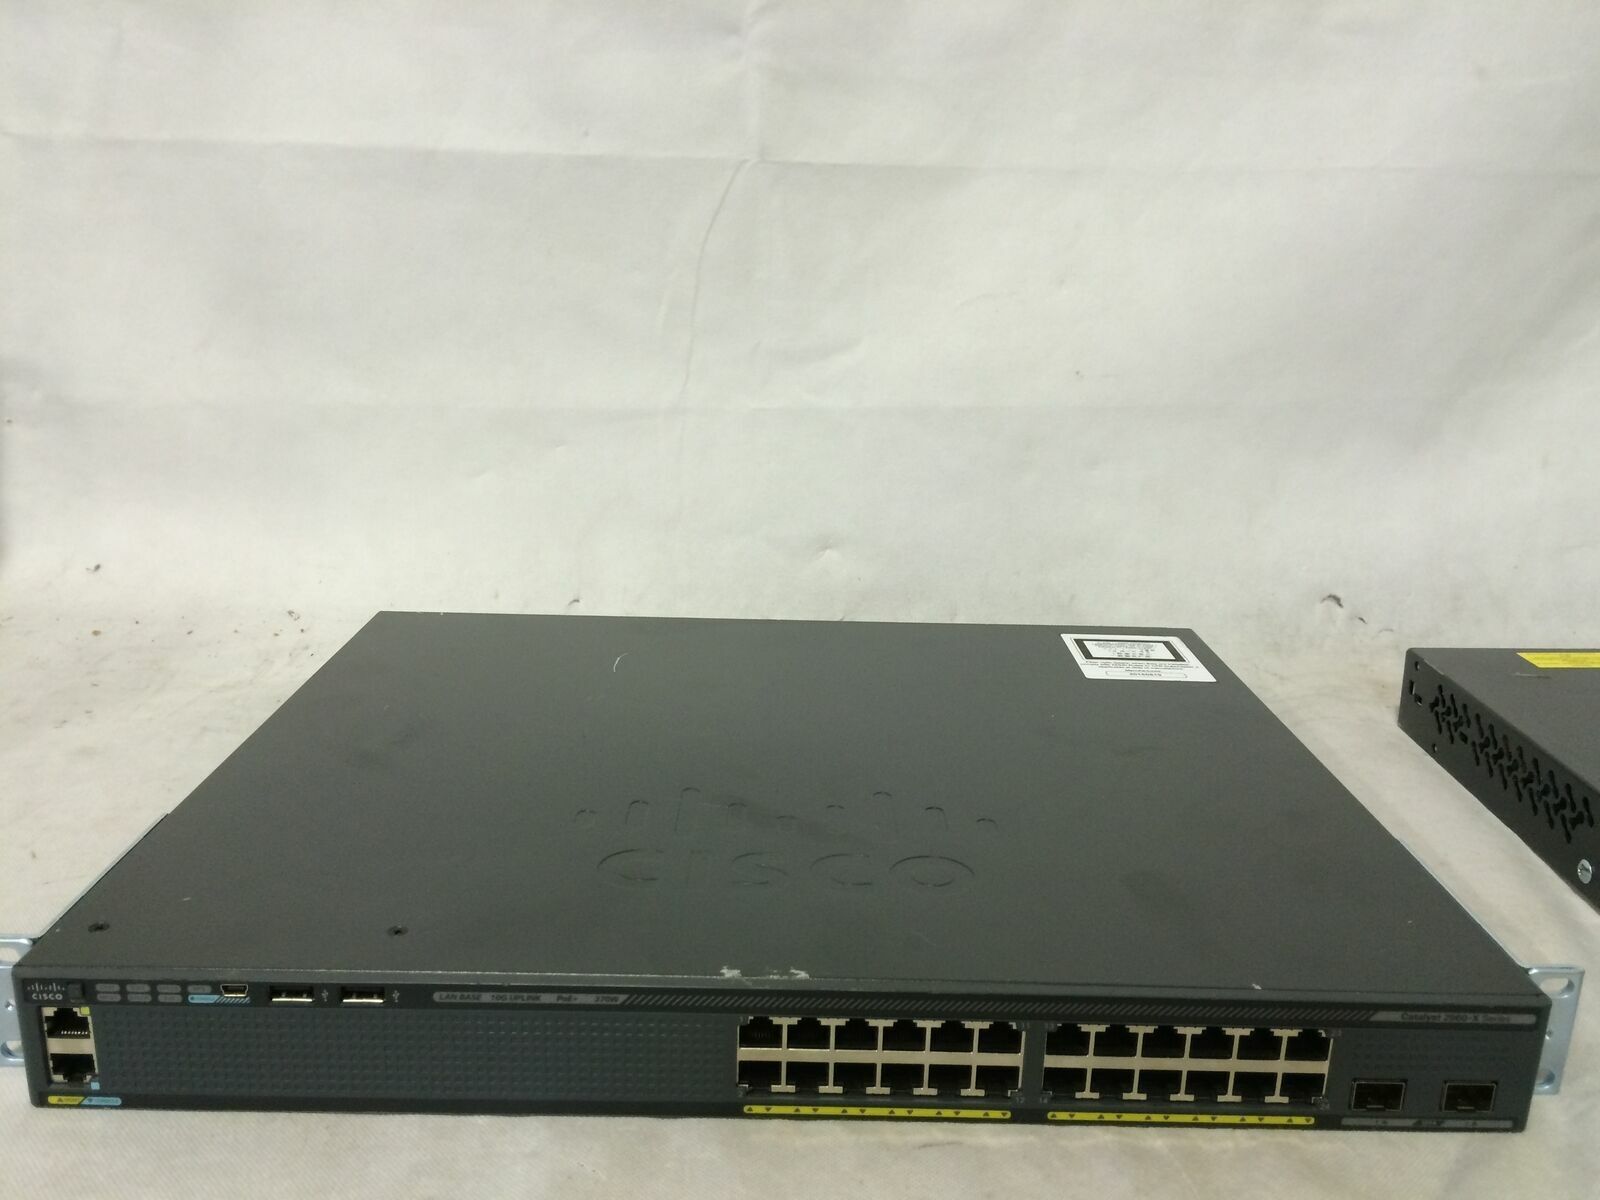 Cisco Catalyst WS-C2960X-24PD-L GigE PoE 370W, 2 x 10G SFP+, LAN Base